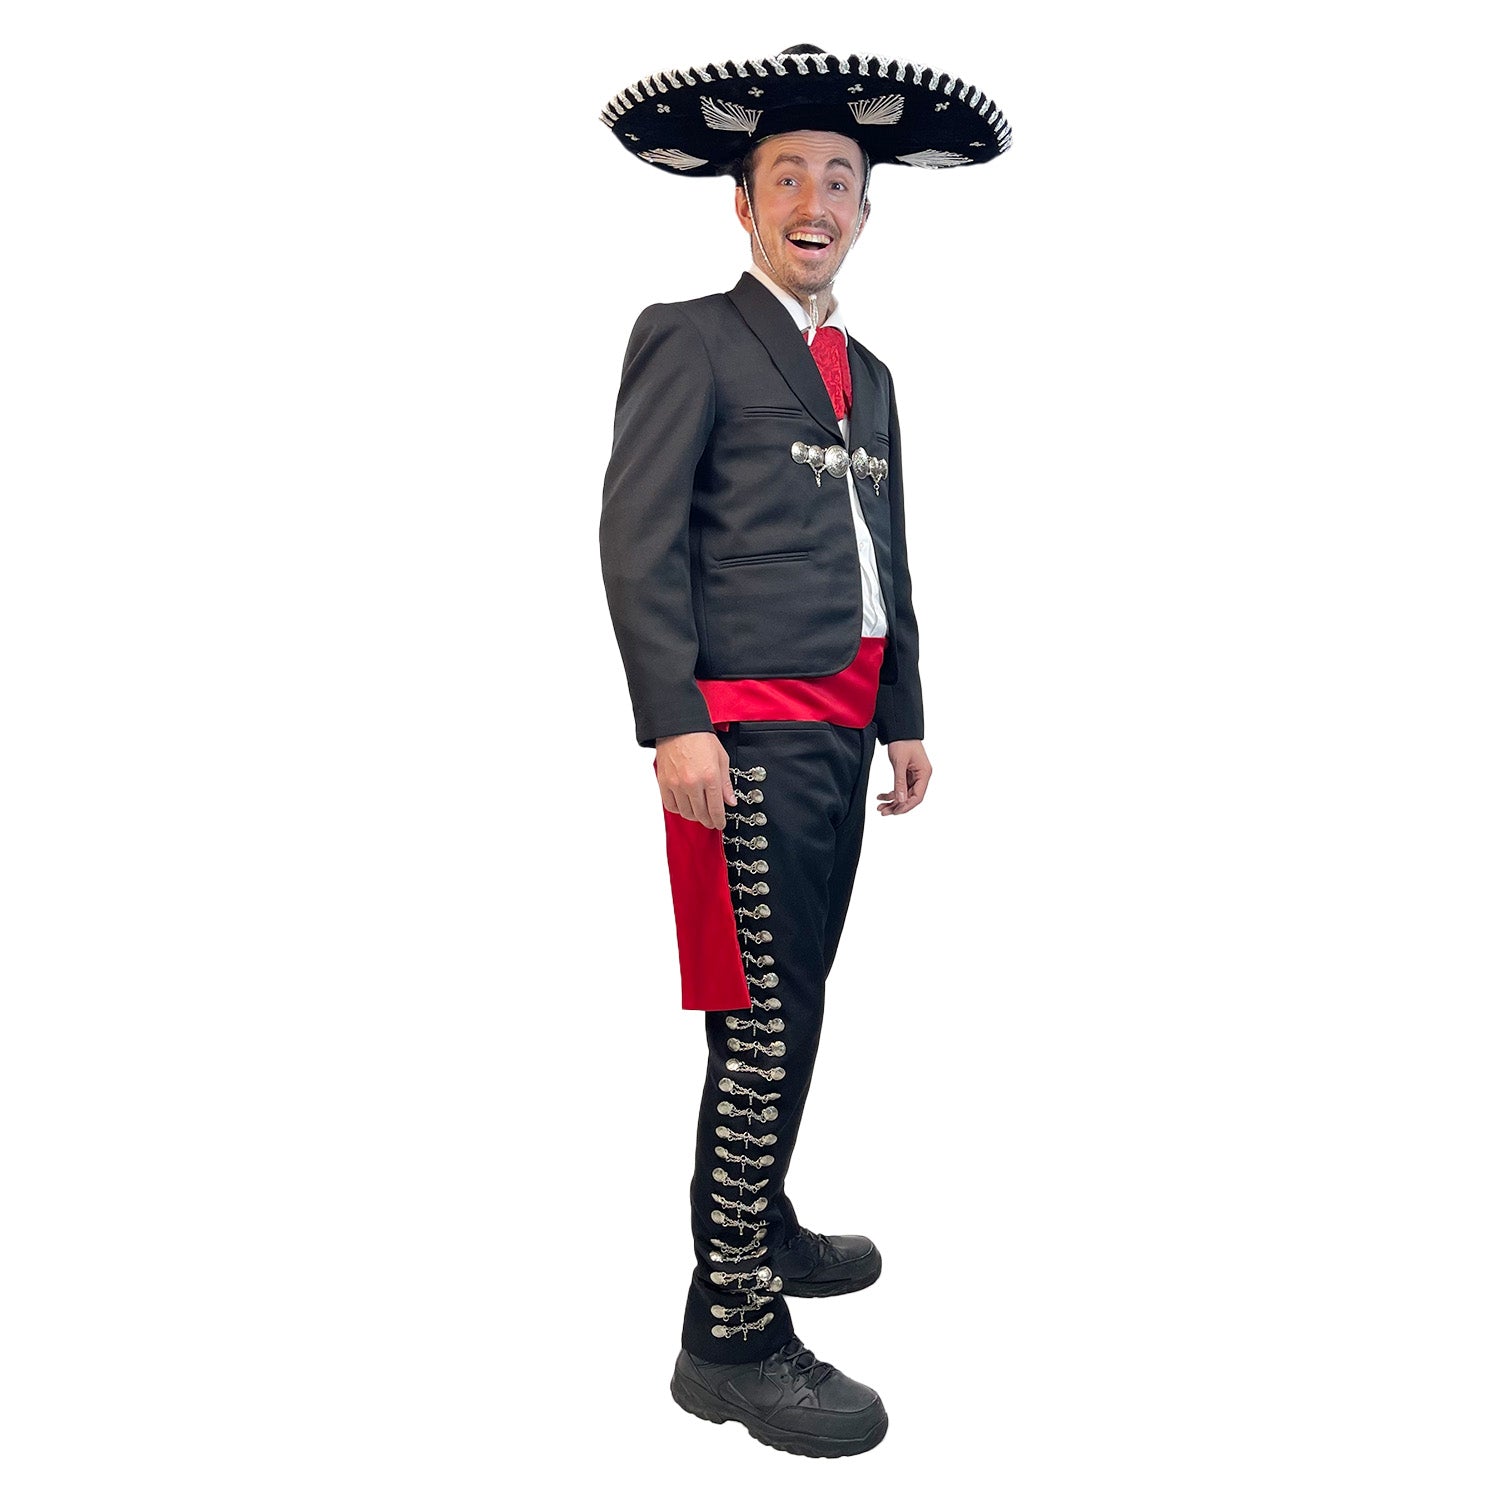 Mariachi Man Premium Adult Costume